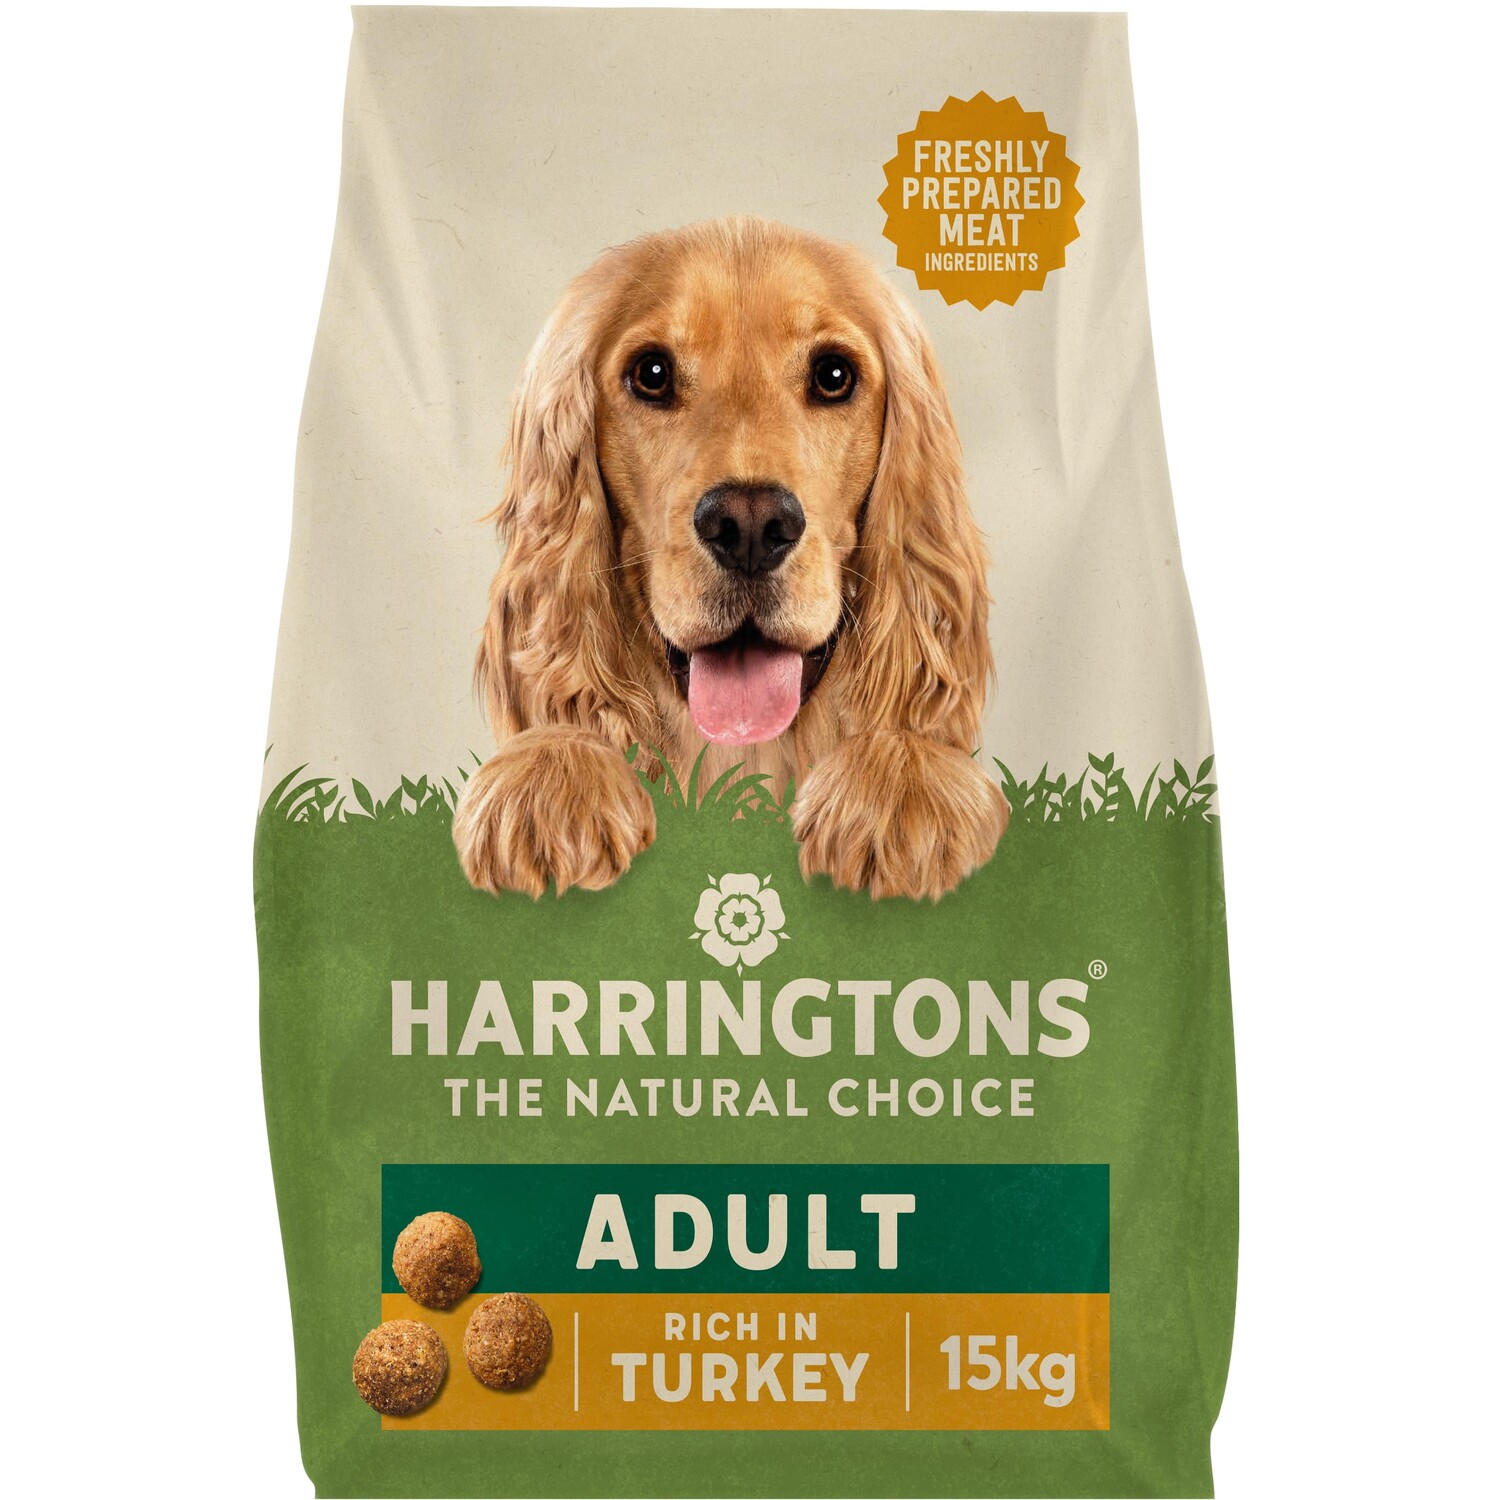 Harringtons Turkey Adult Dog Food 15kg Image 1